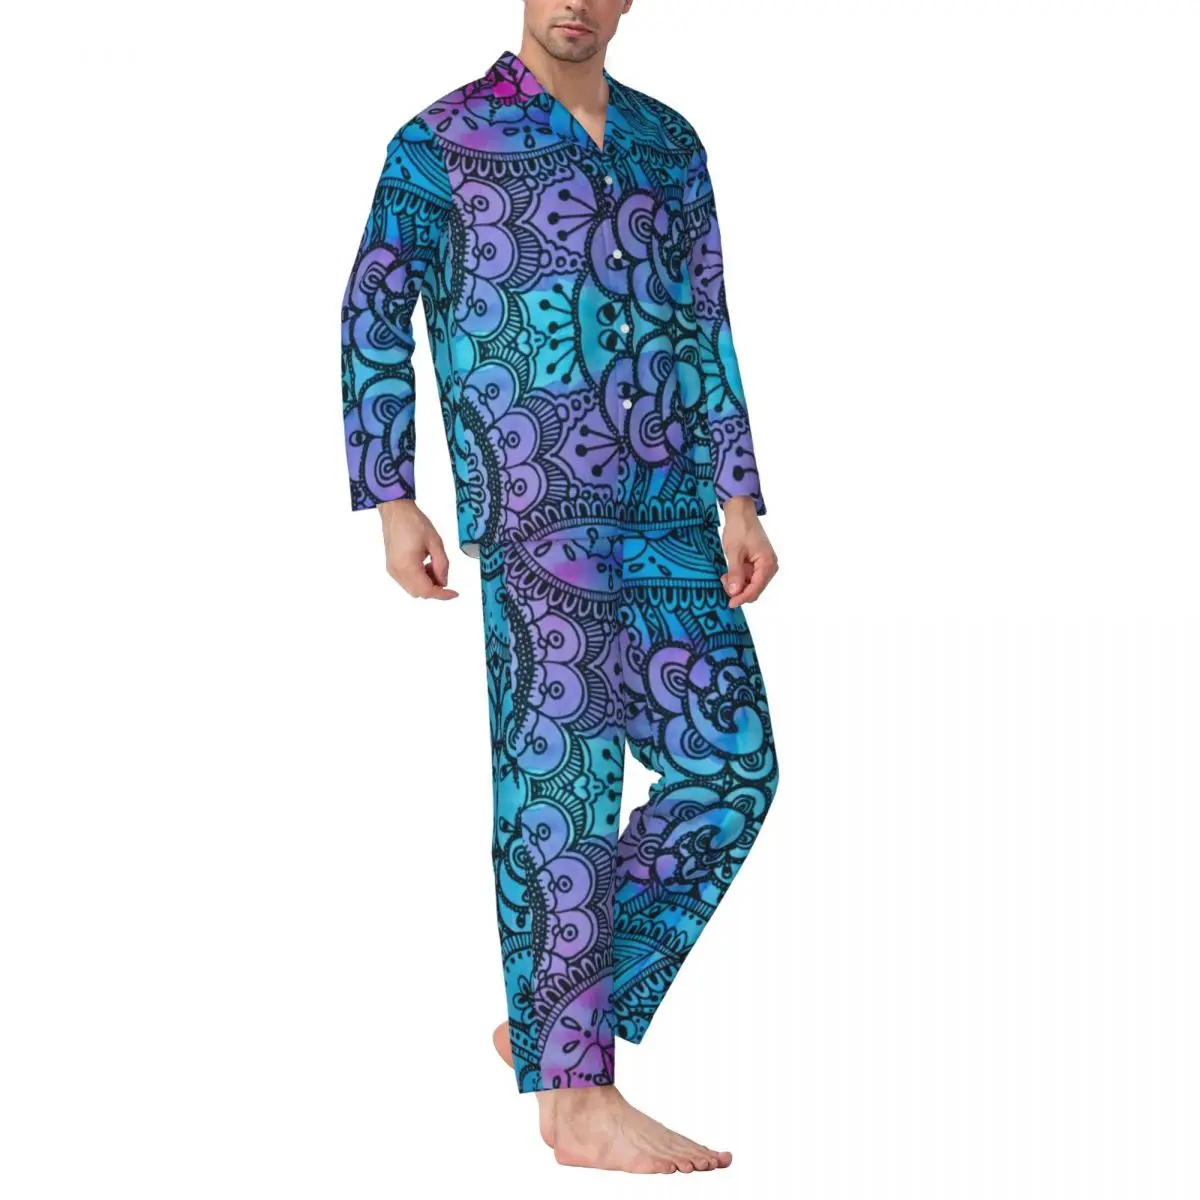 

Пижамный комплект Tie Dye в стиле хиппи, осенняя модная домашняя одежда для сна с винтажным принтом, мужской повседневный костюм из двух предметов большого размера, индивидуальный домашний костюм, идея для подарка